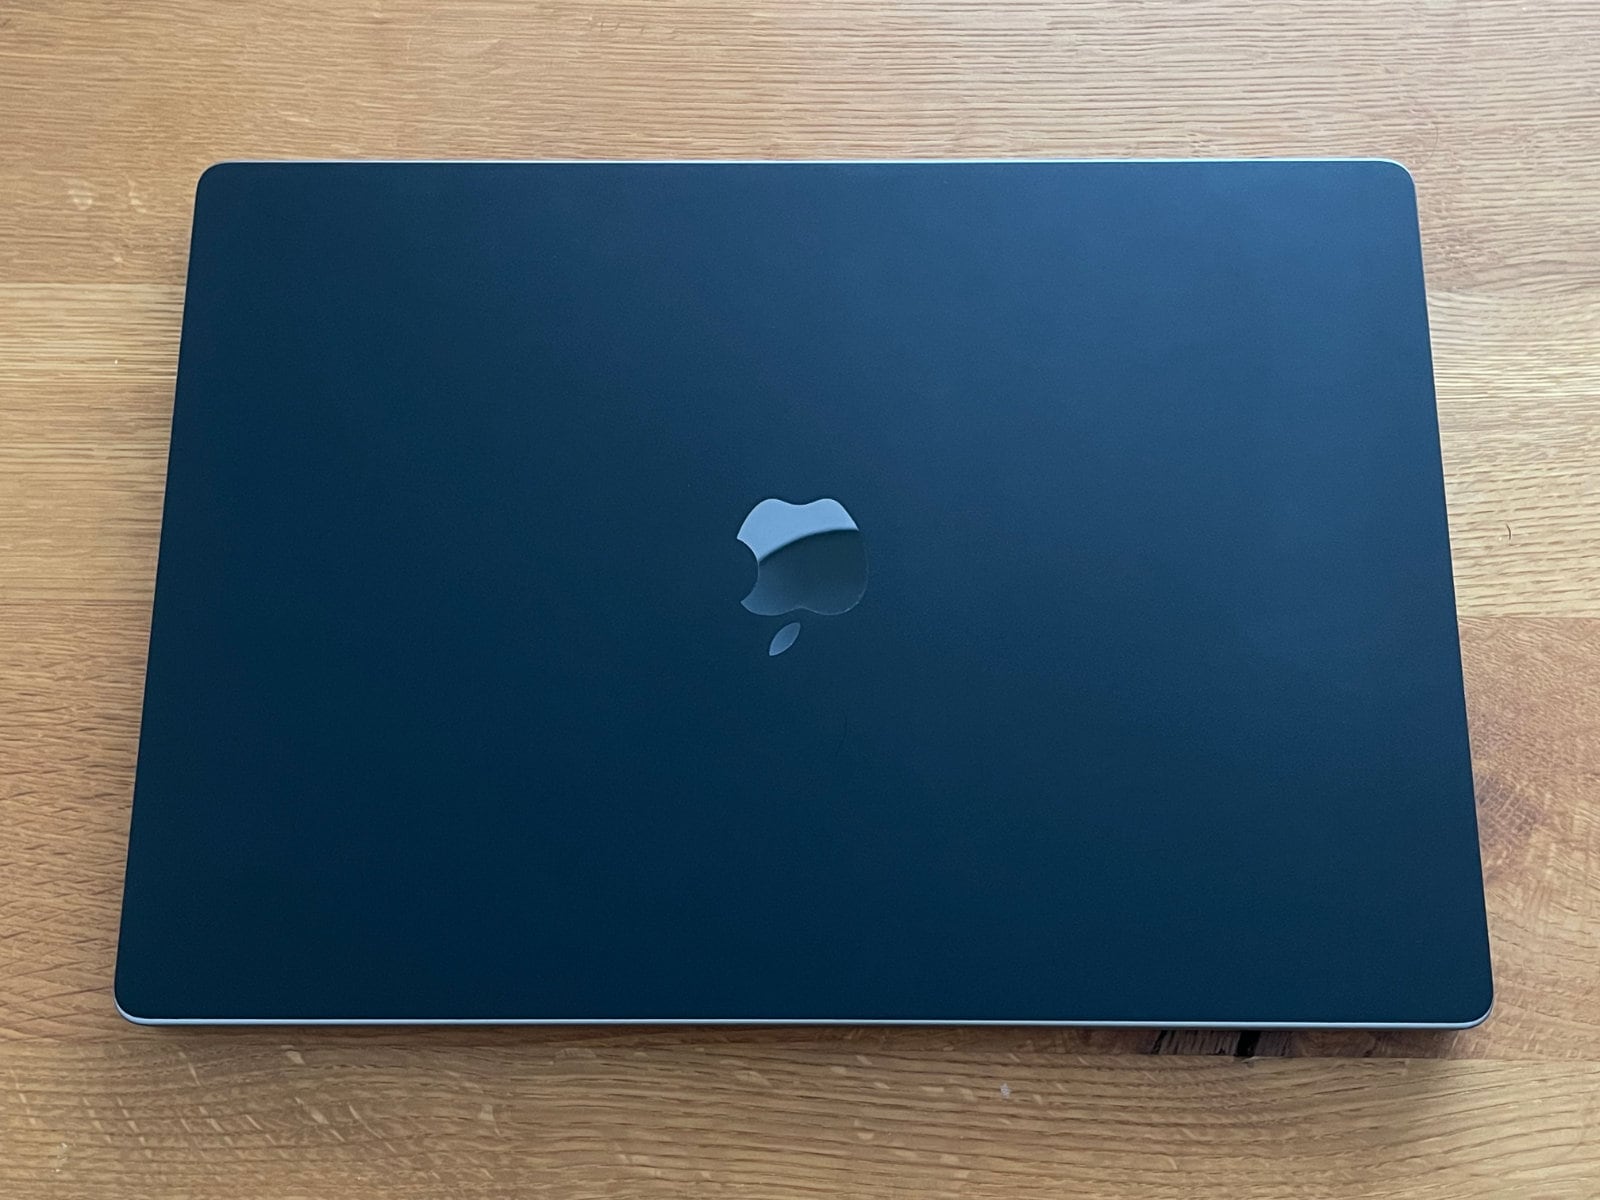 閉じた状態のMacBook Pro 16インチ。ほぼ真上の正面手前から撮った写真。Appleロゴ部分には切り抜きが入っているため綺麗に反射している